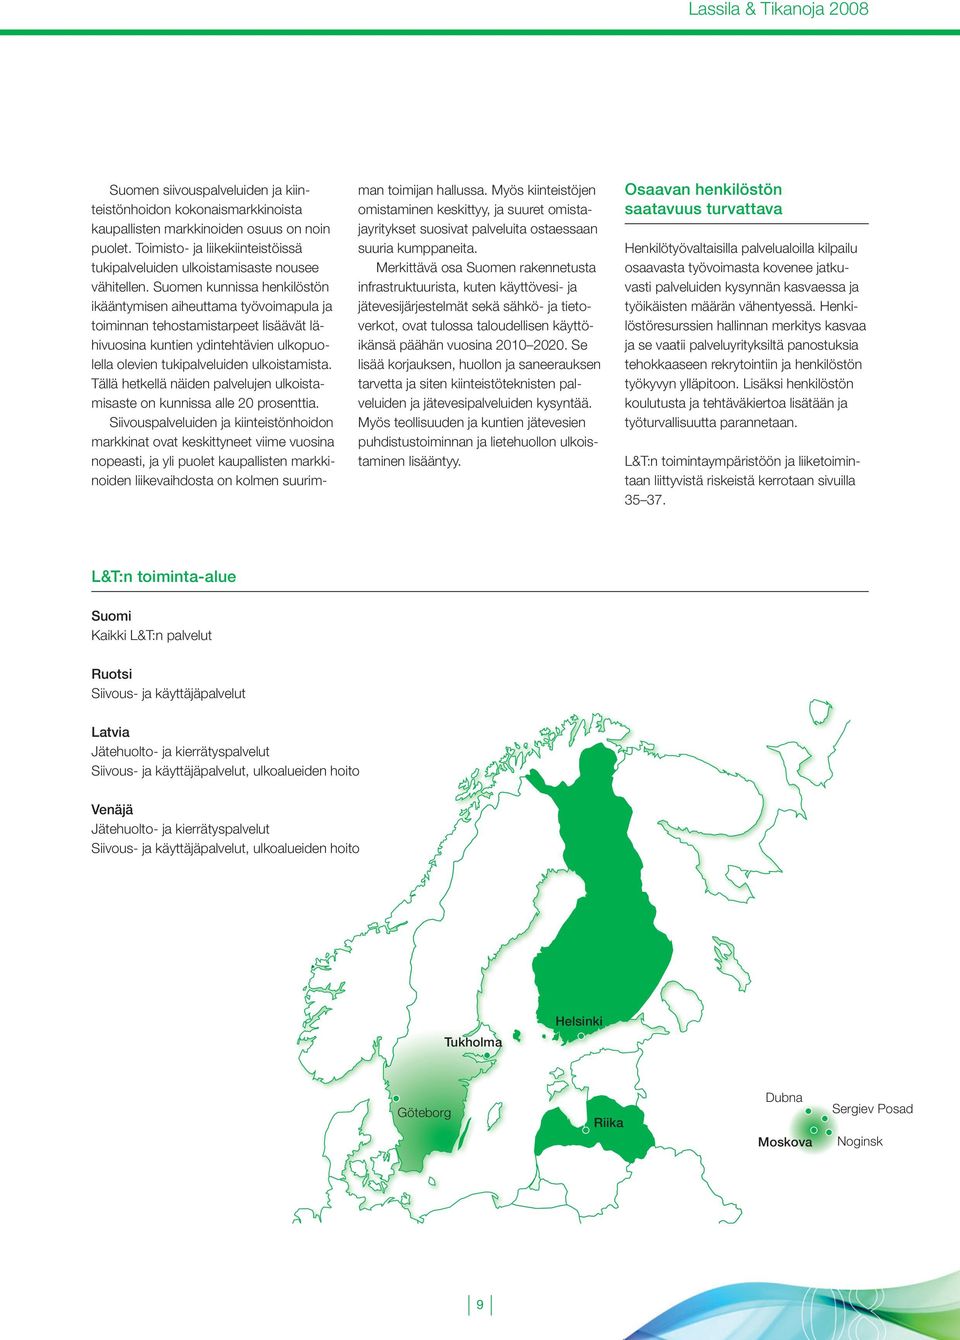 Suomen kunnissa henkilöstön ikääntymisen aiheuttama työvoimapula ja toiminnan tehostamistarpeet lisäävät lähivuosina kuntien ydintehtävien ulkopuolella olevien tukipalveluiden ulkoistamista.